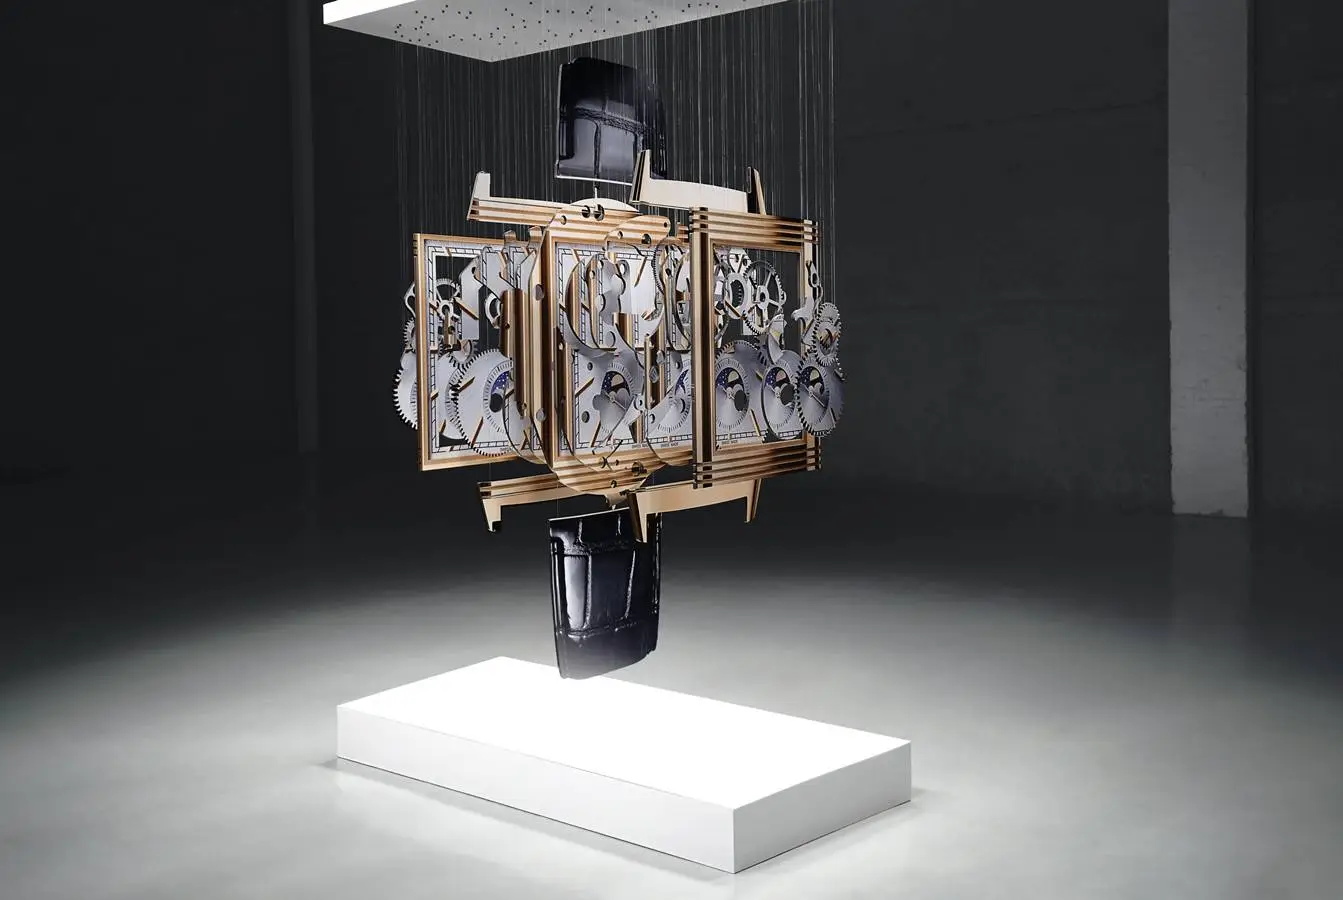 Niecodzienne spojrzenie na zegarki – rzeźba „Spacetime” artysty Michaela Murphy’ego